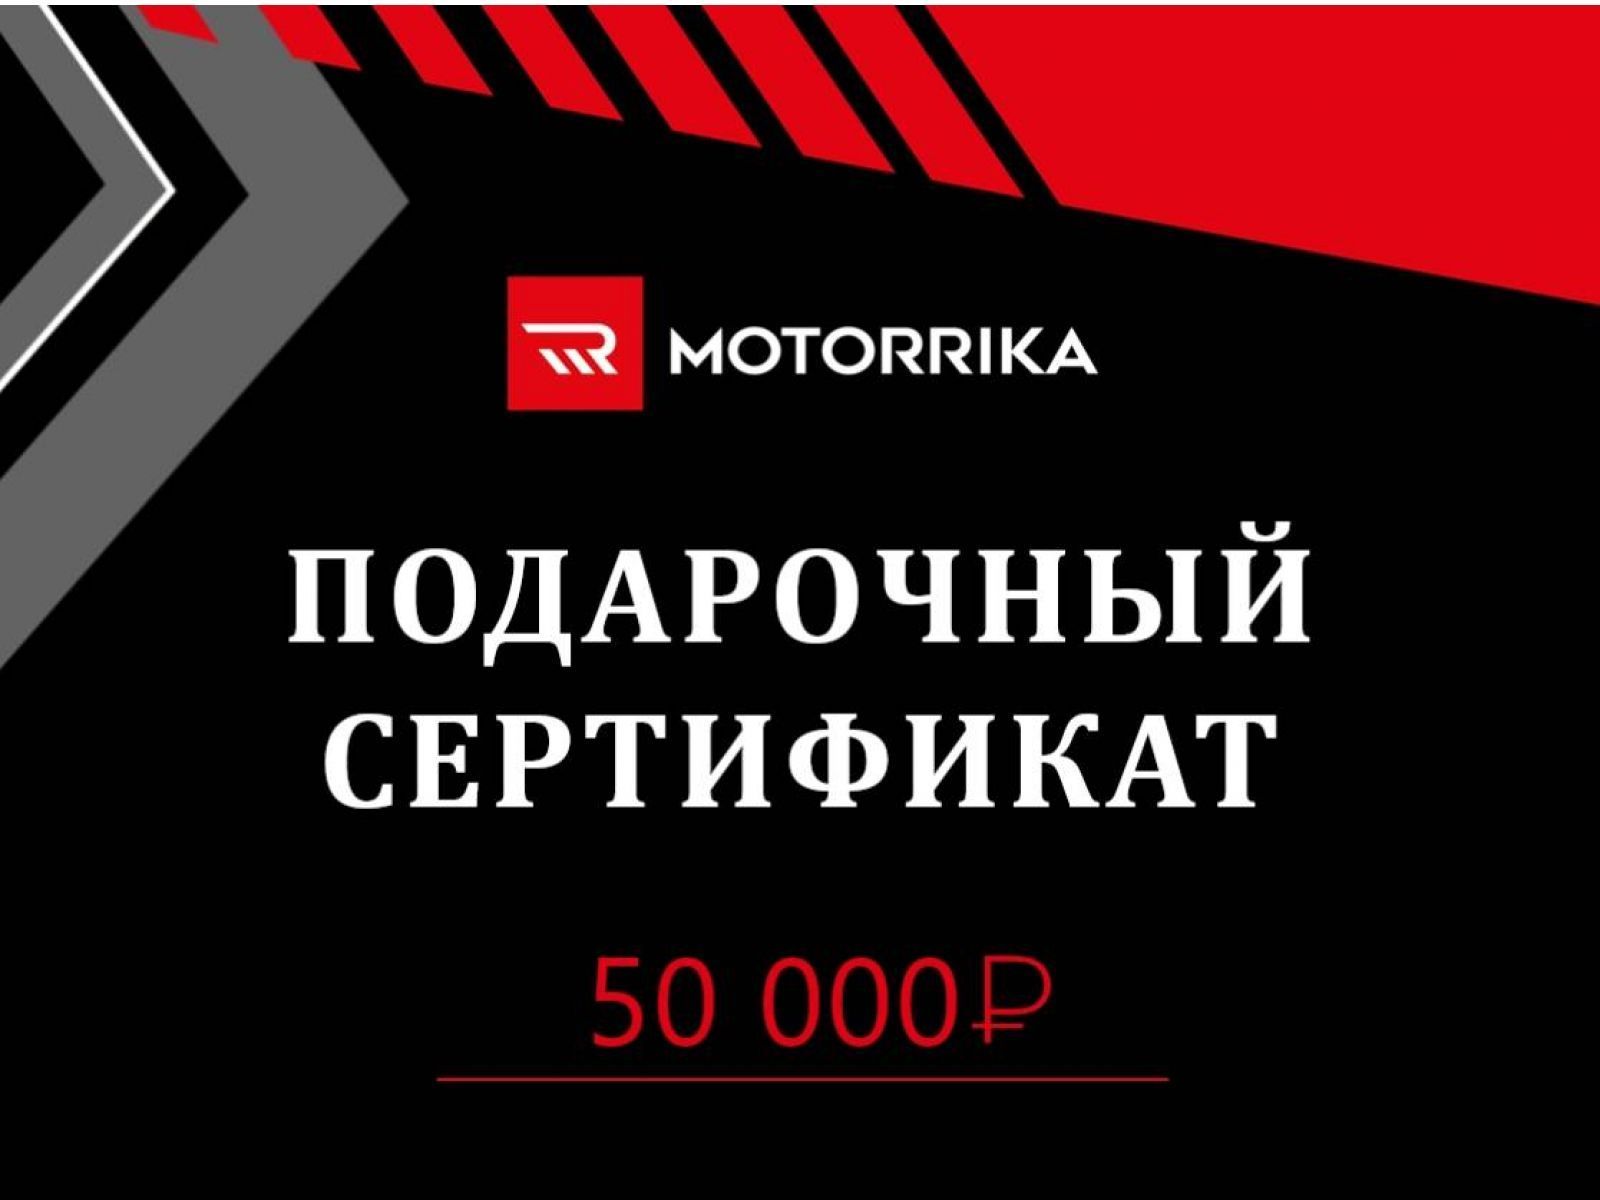 Подарочный сертификат 50.000 руб